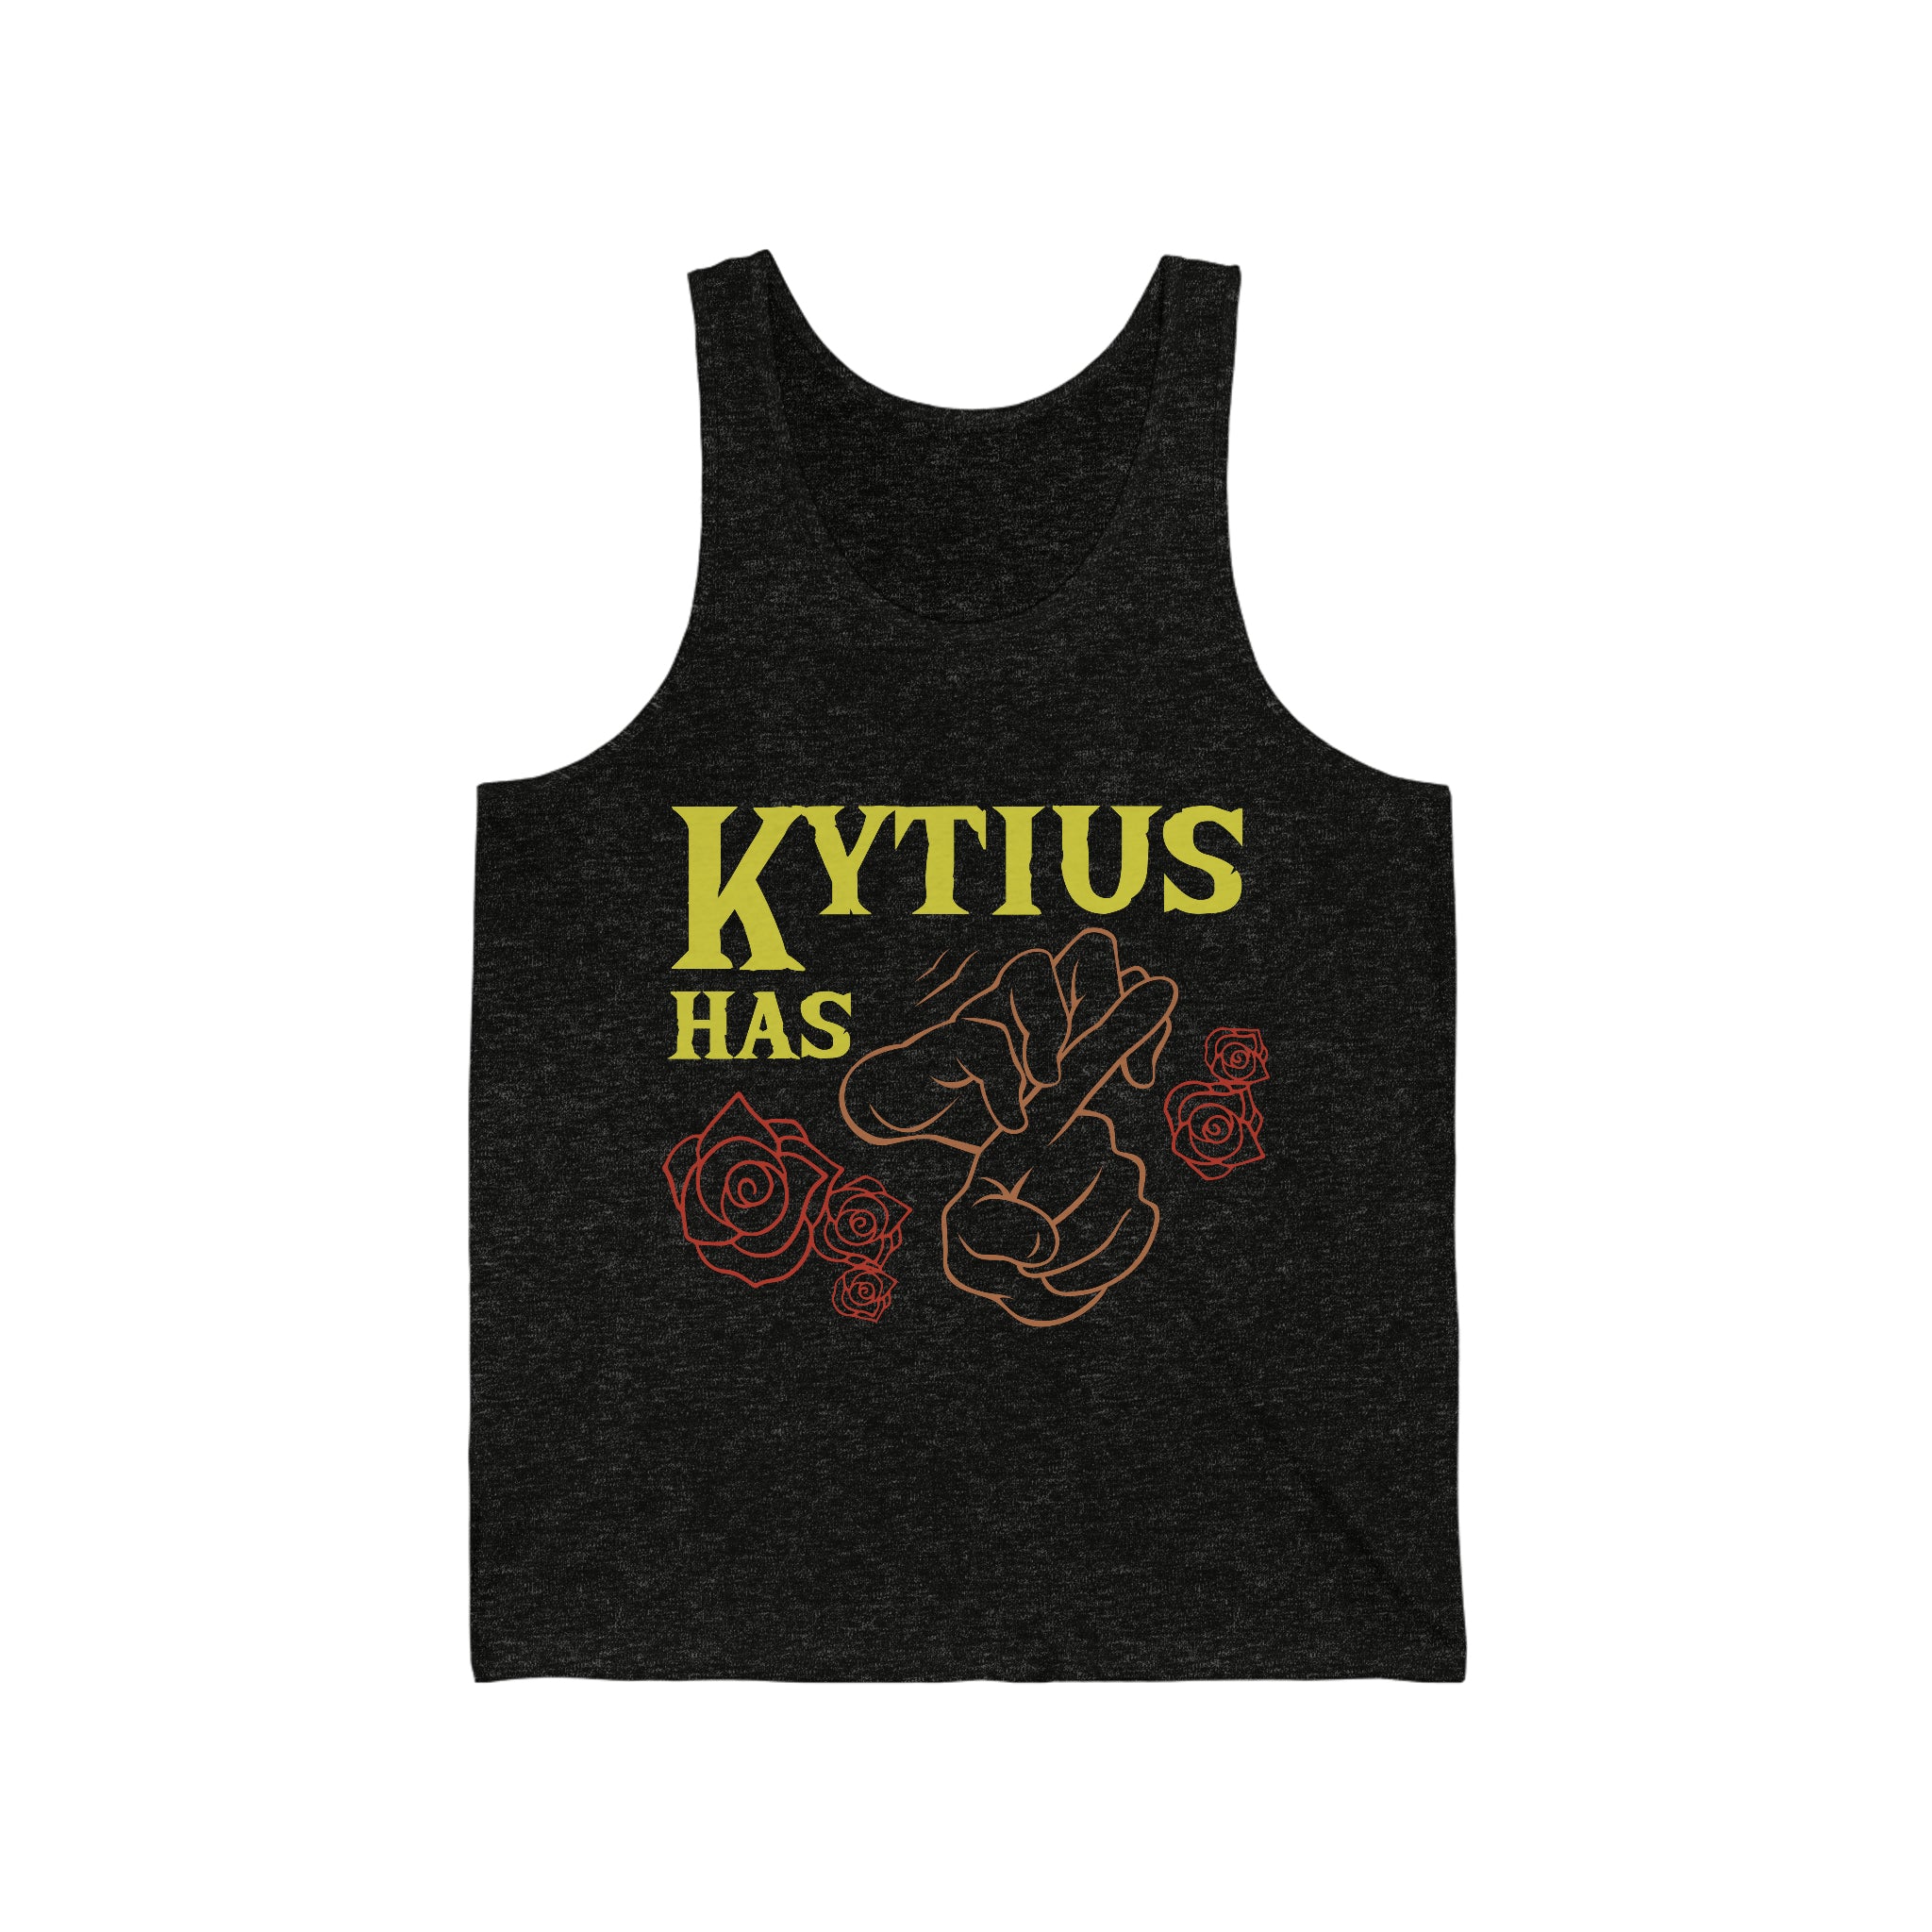 'Kytius has Herpes' Tank Top